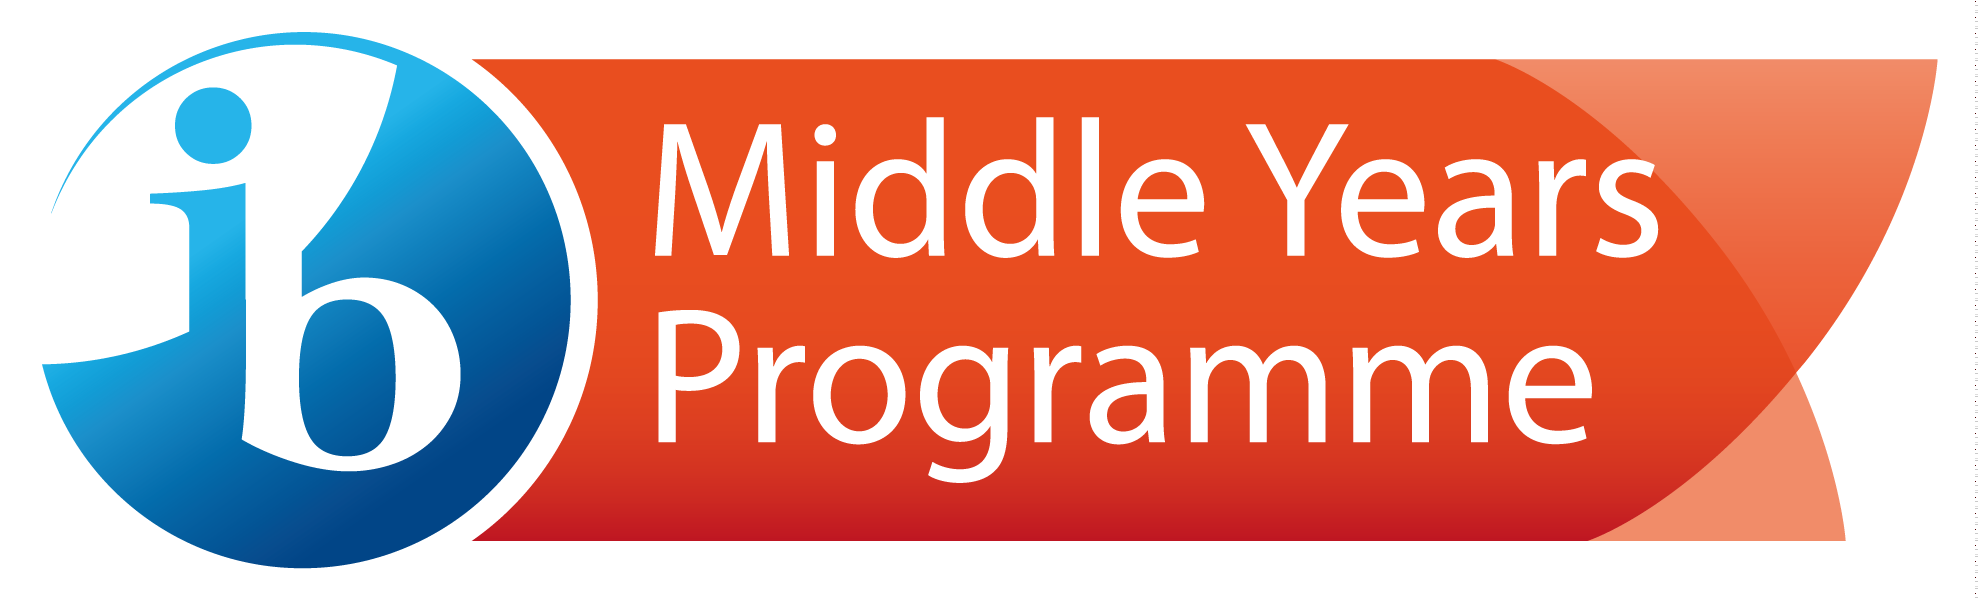 middle year program logo